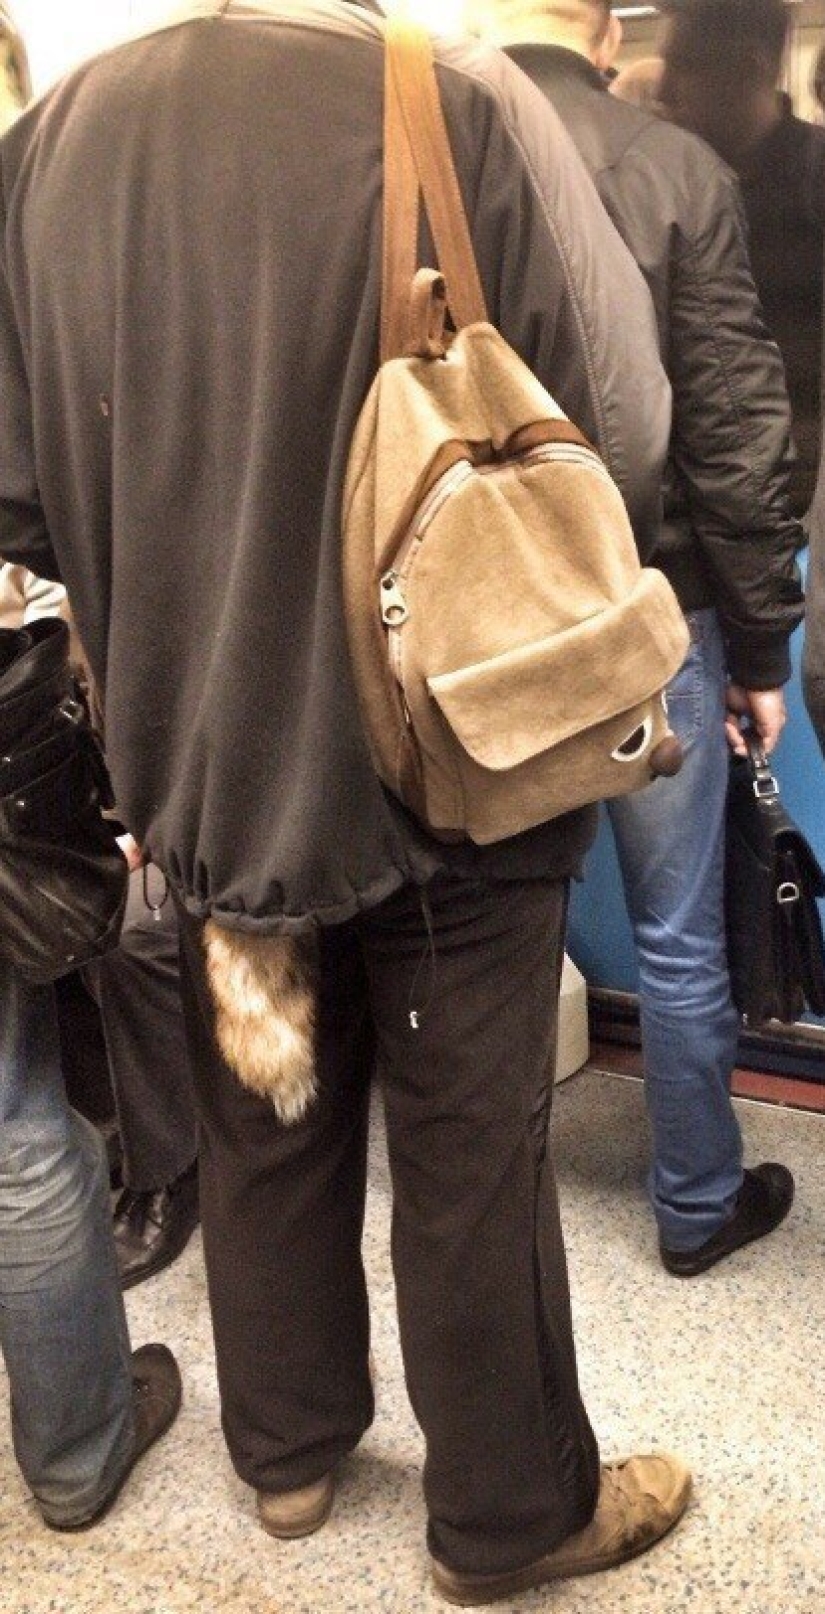 Gente de moda del metro de Moscú